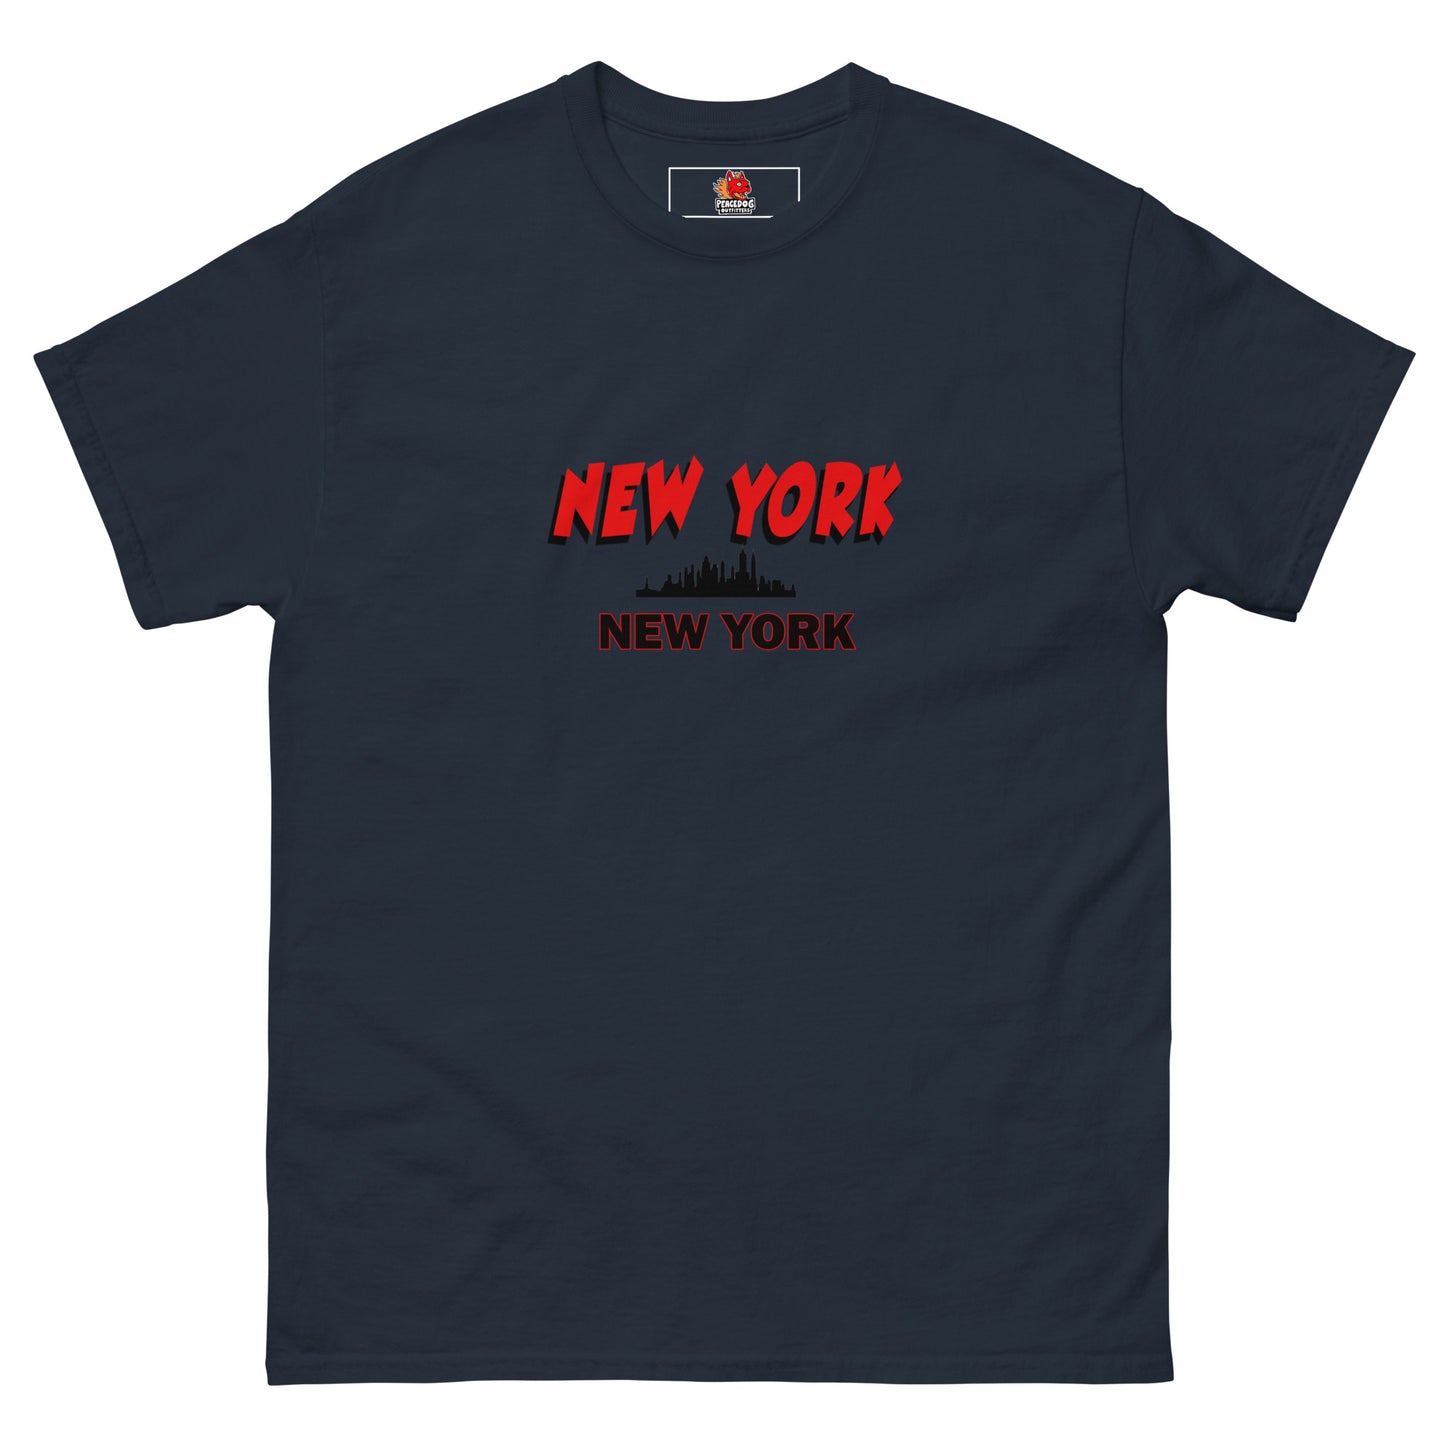 New York, New York Men's classic tee